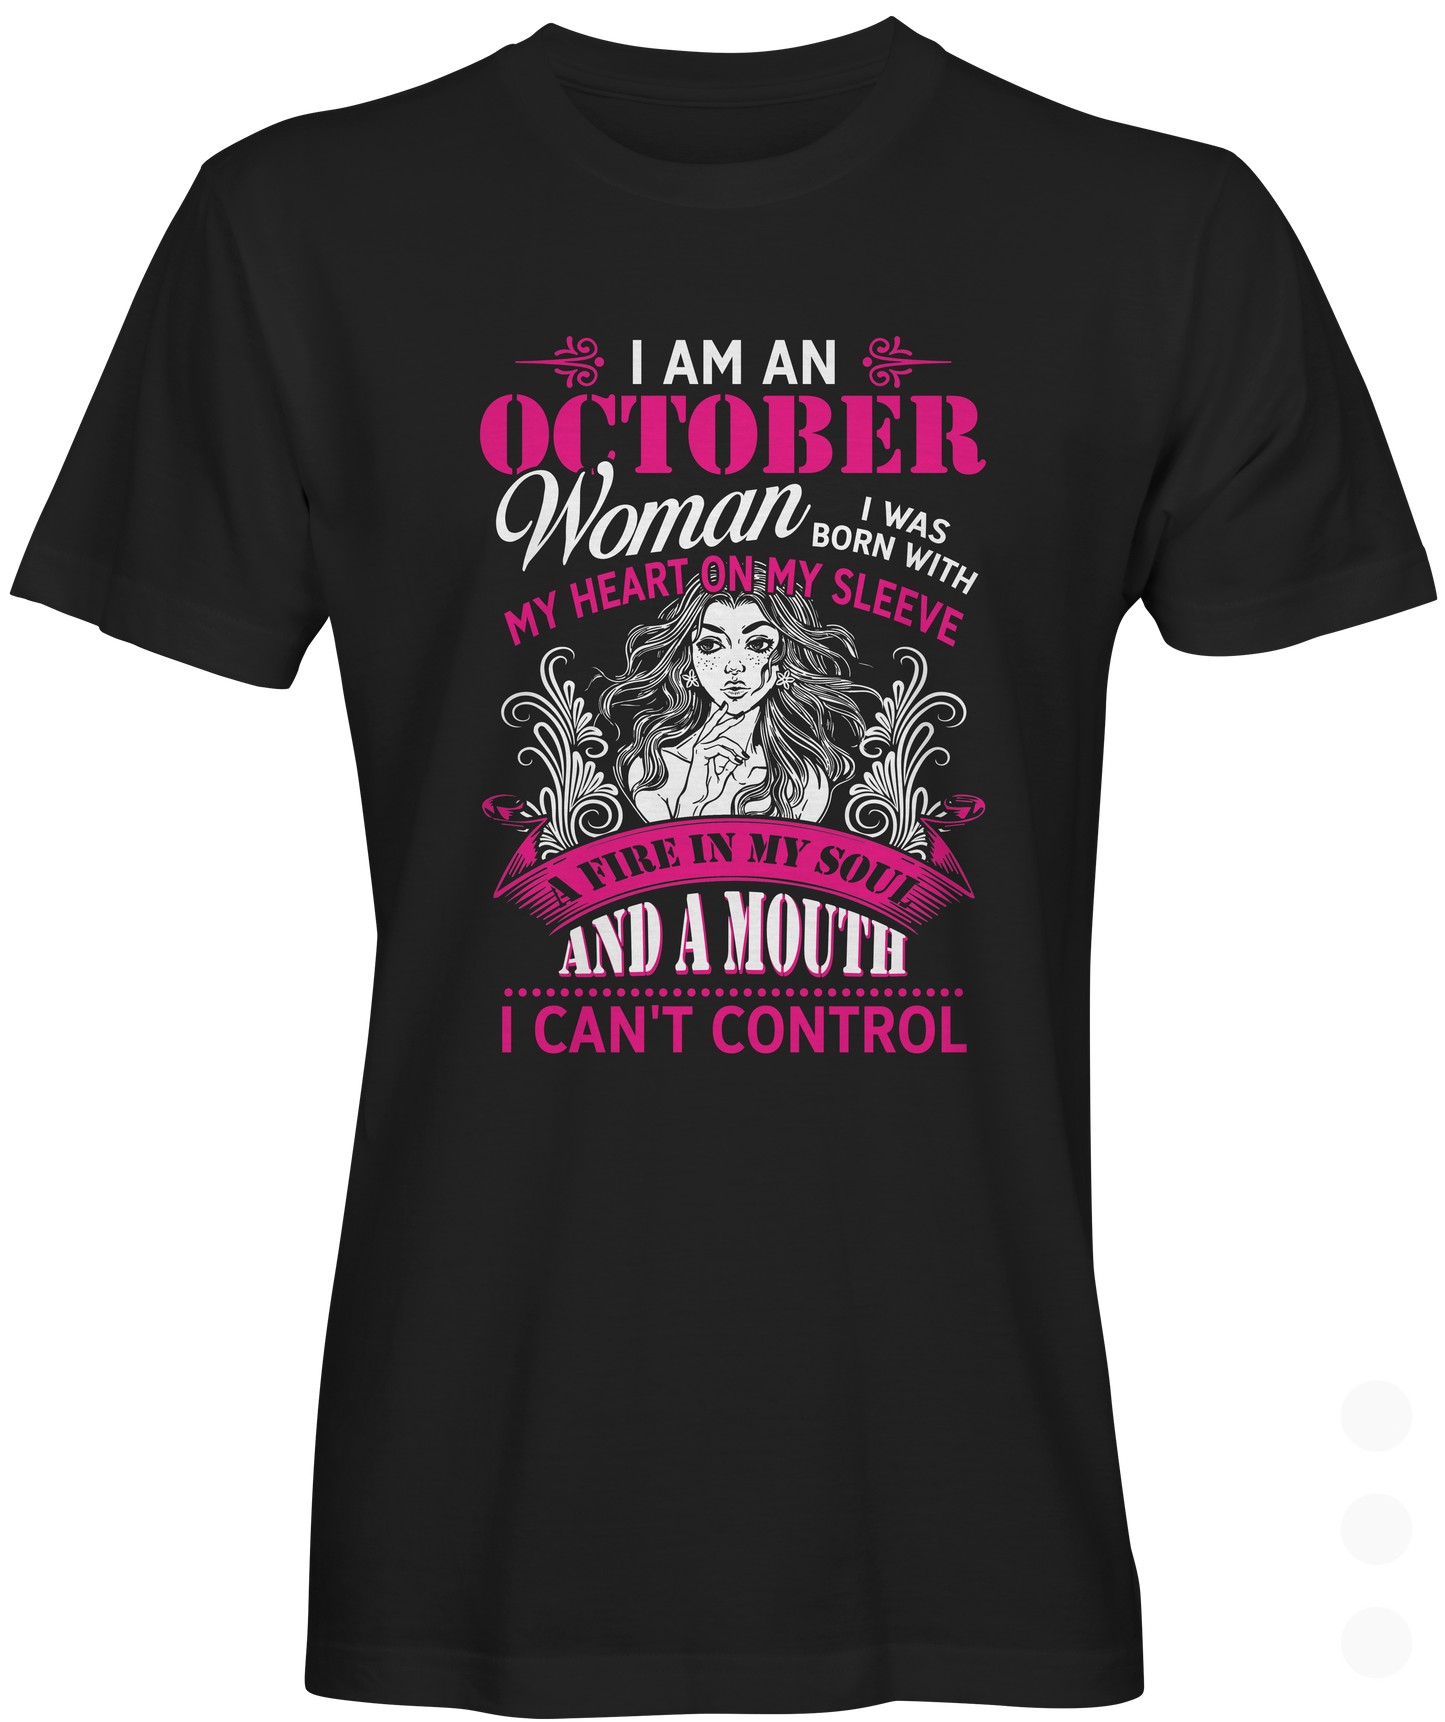 October Woman T-shirt